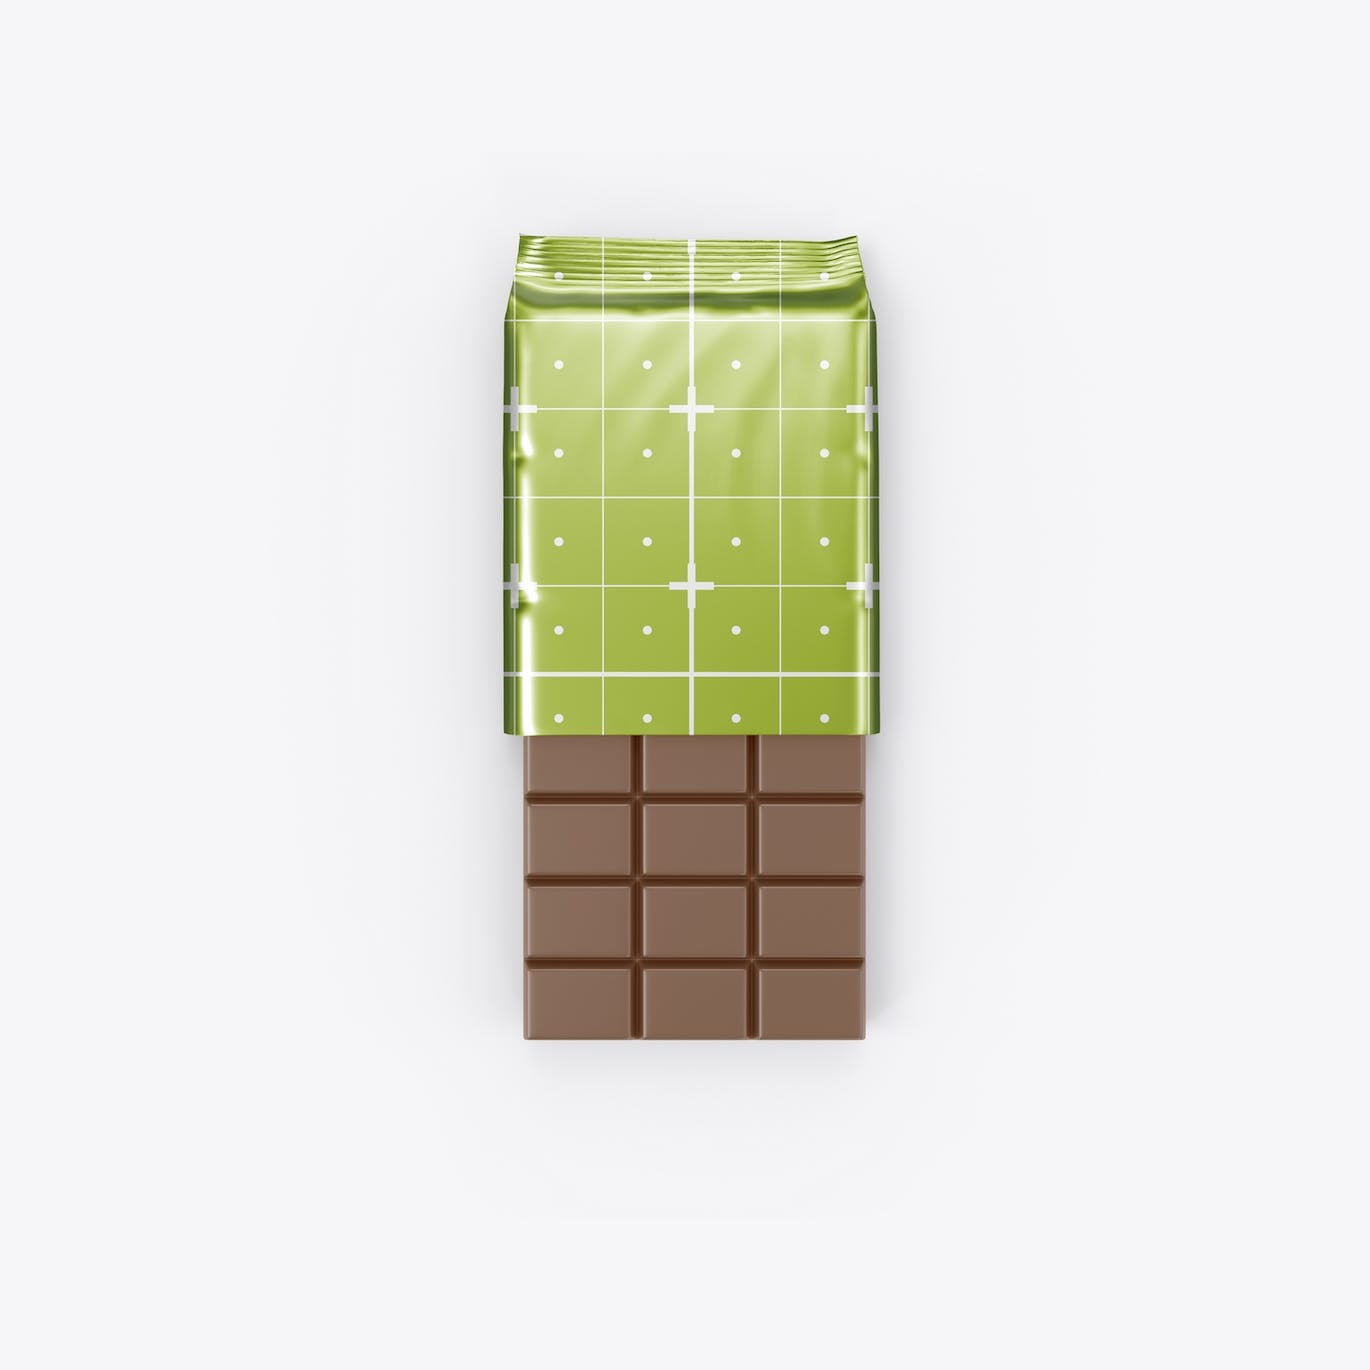 光亮的巧克力棒设计包装样机图 Set Glossy Chocolate Bar Mockup 样机素材 第11张